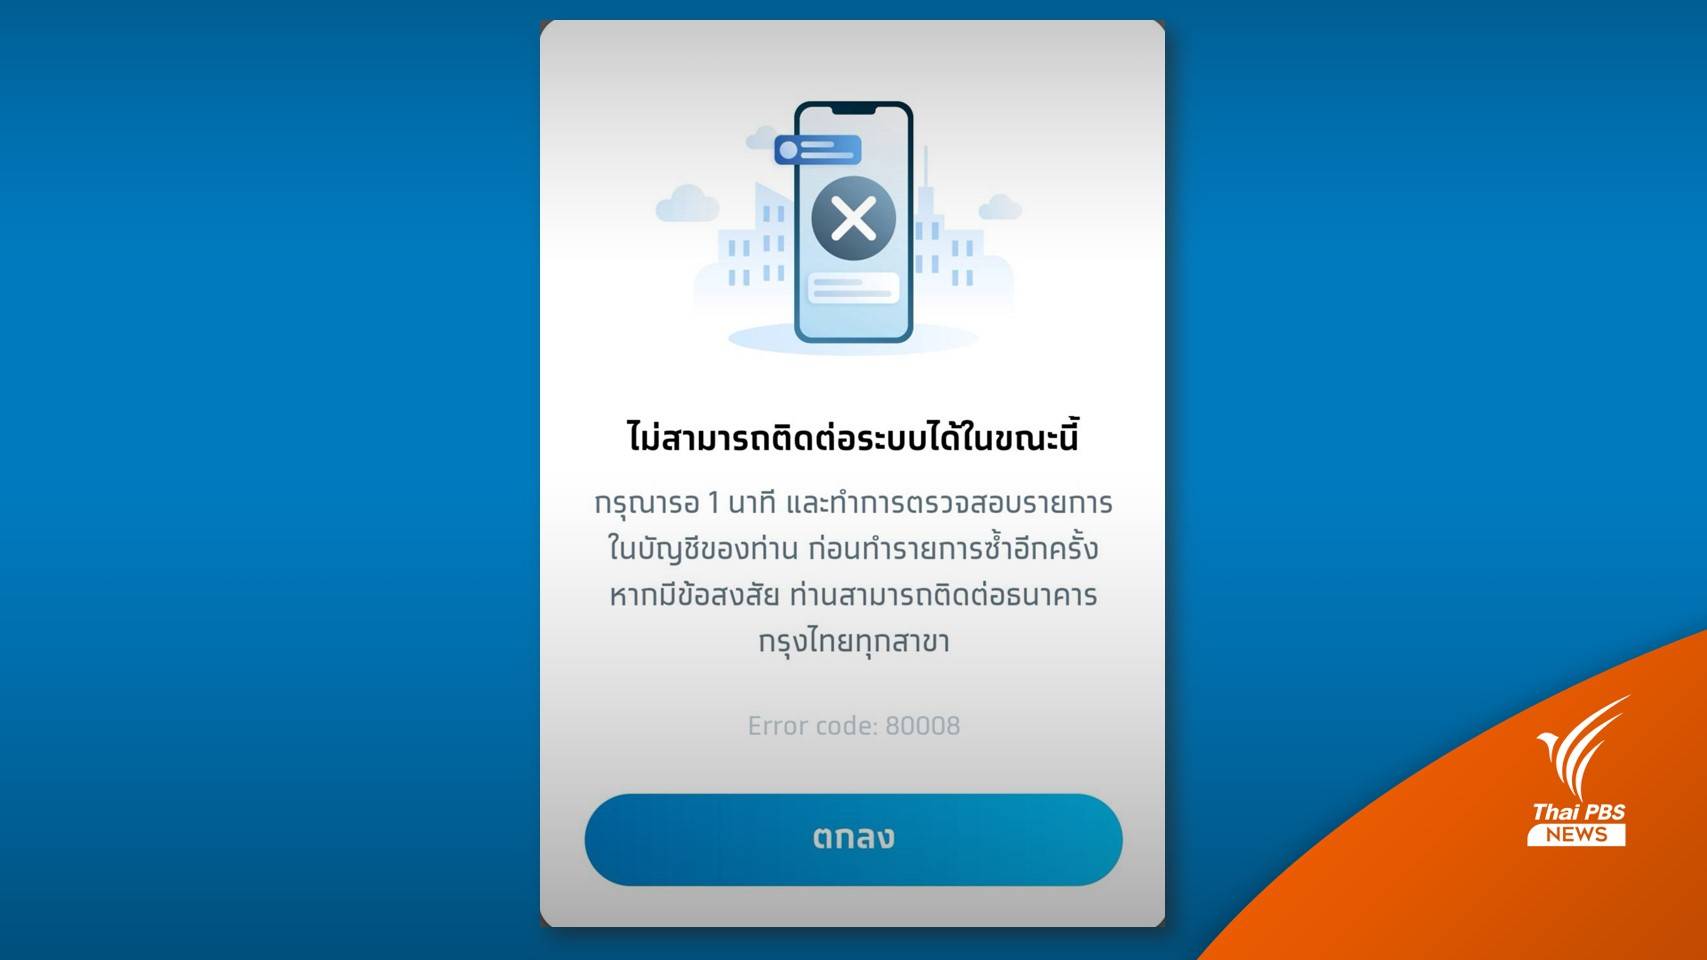 ทวิตเตอร์ติดเทรนด์ #กรุงไทยล่ม โอดโอนเงินไม่ได้